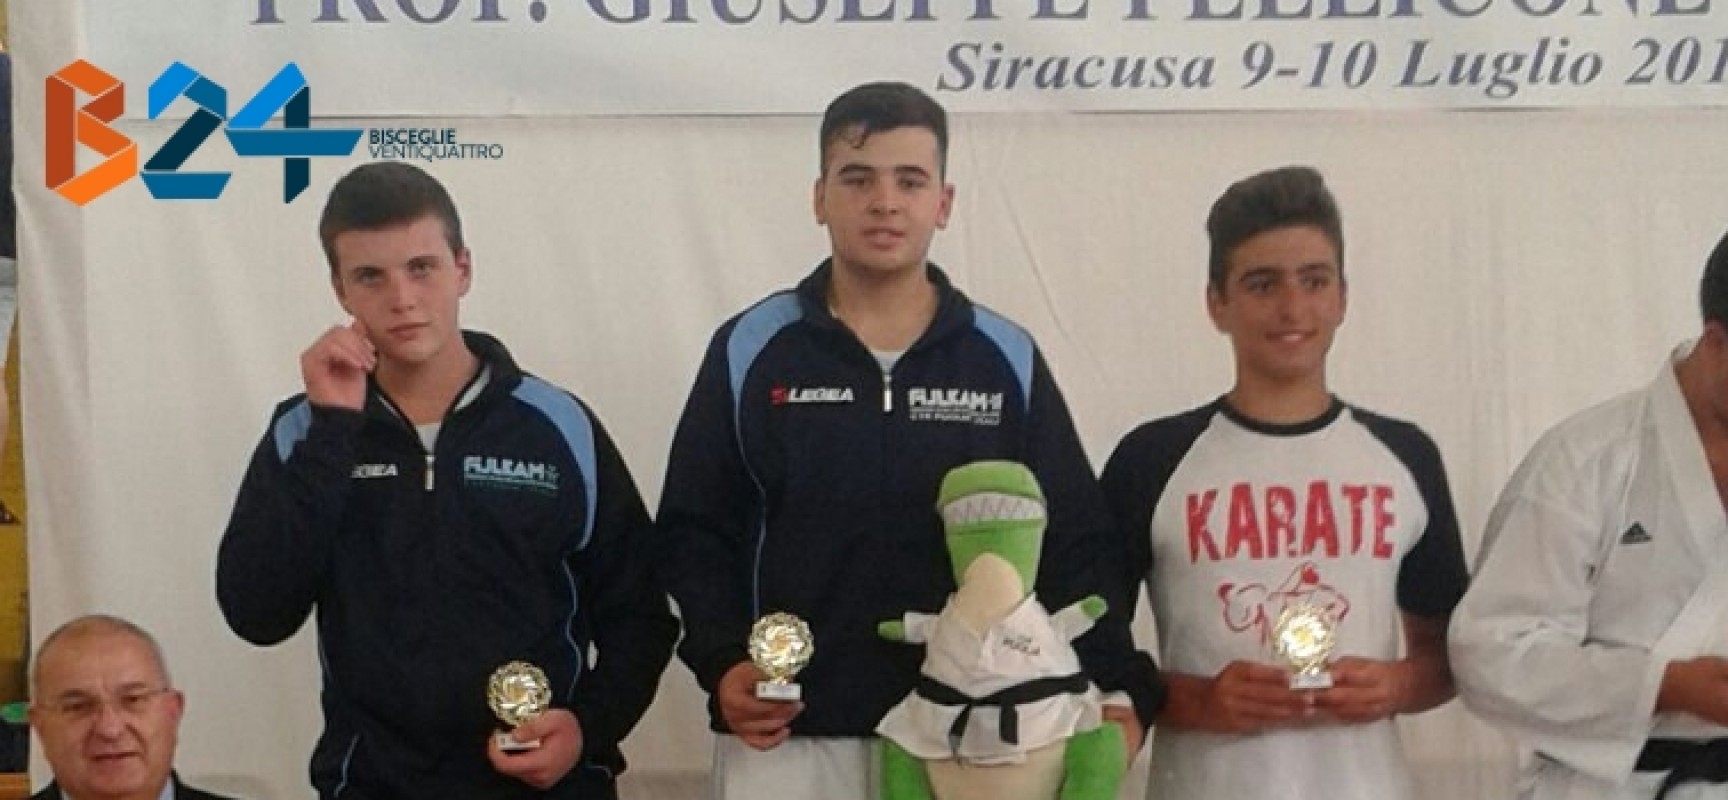 Karate: medaglia d’oro per Fabrizio Papagni all’Open di Siracusa